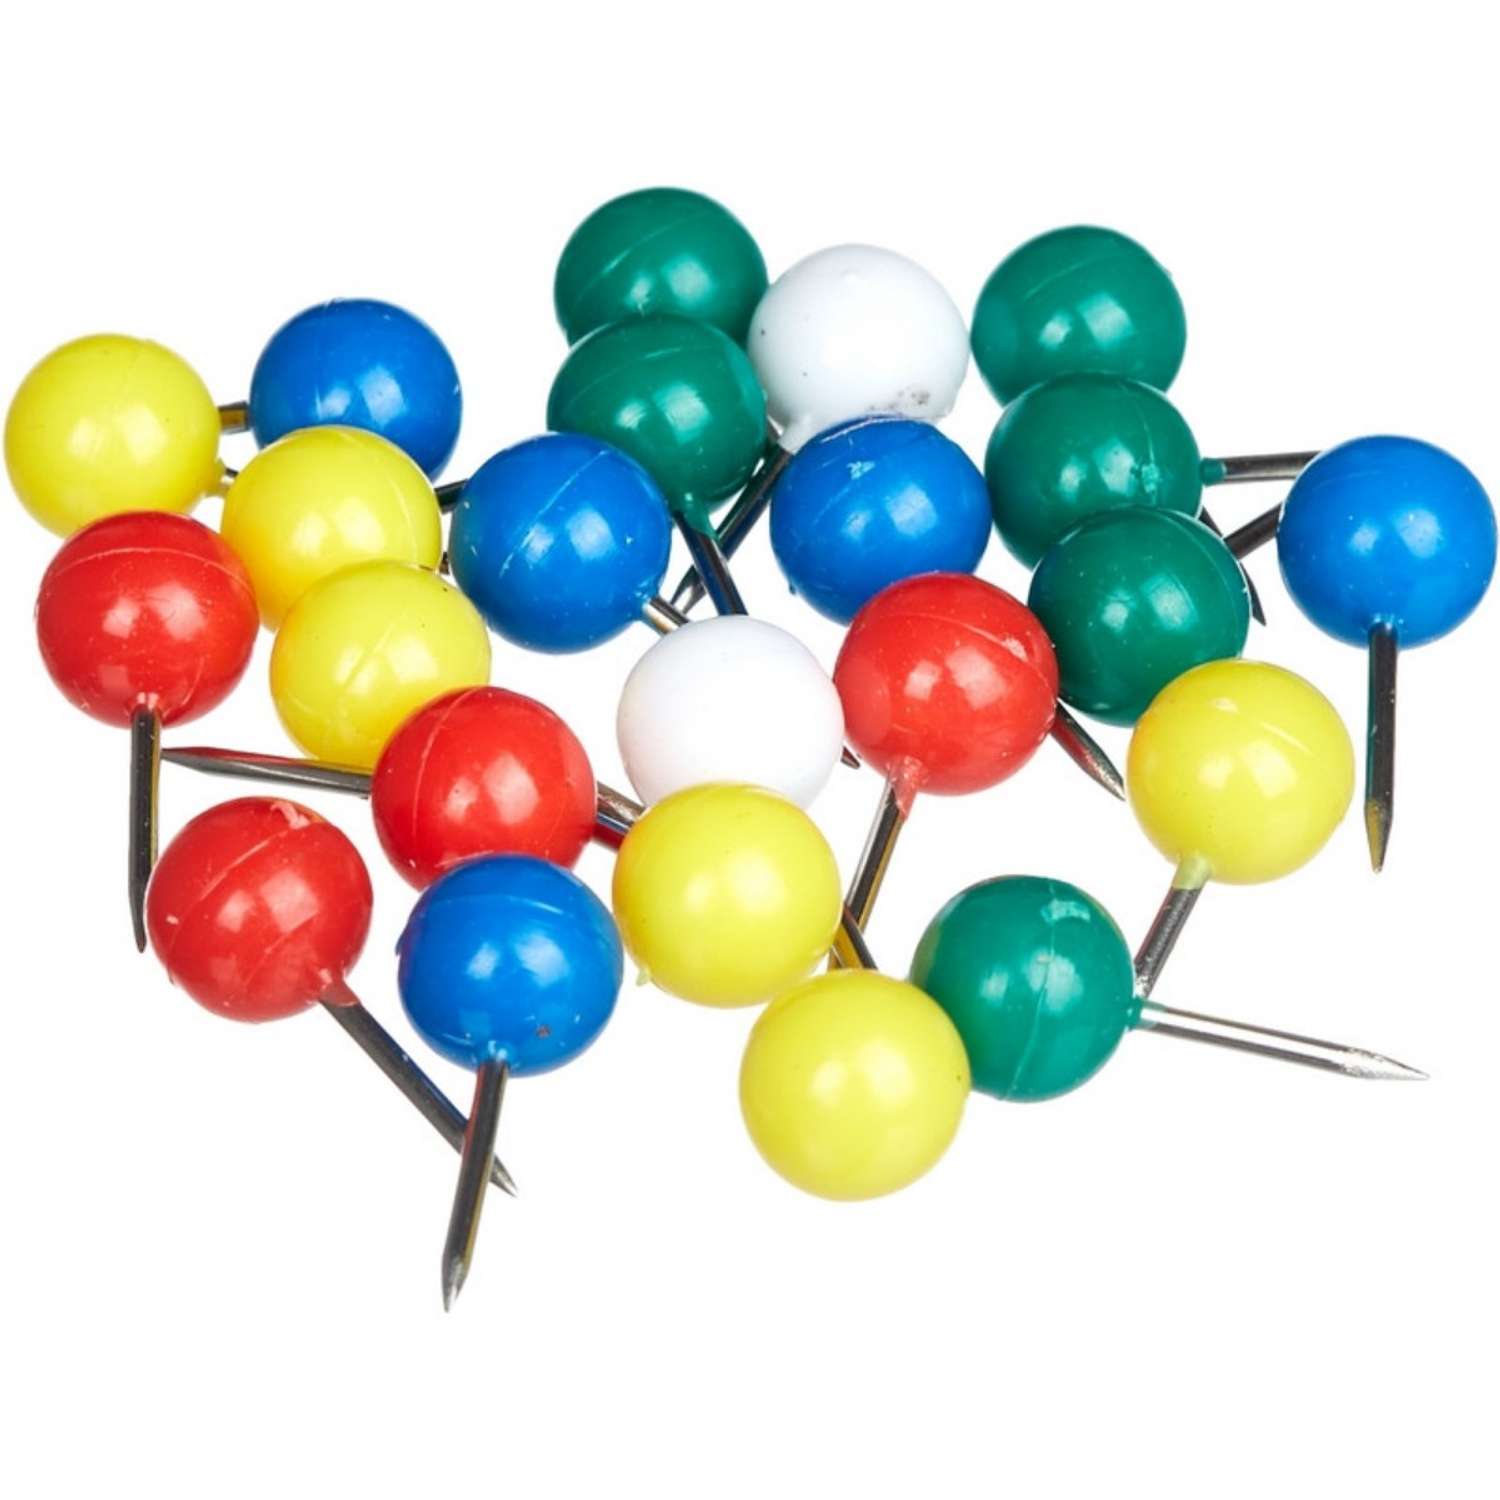 Булавки для пробковых досок Attache силовые (шарики) цветные 6 упаковок по 50 штук - фото 2